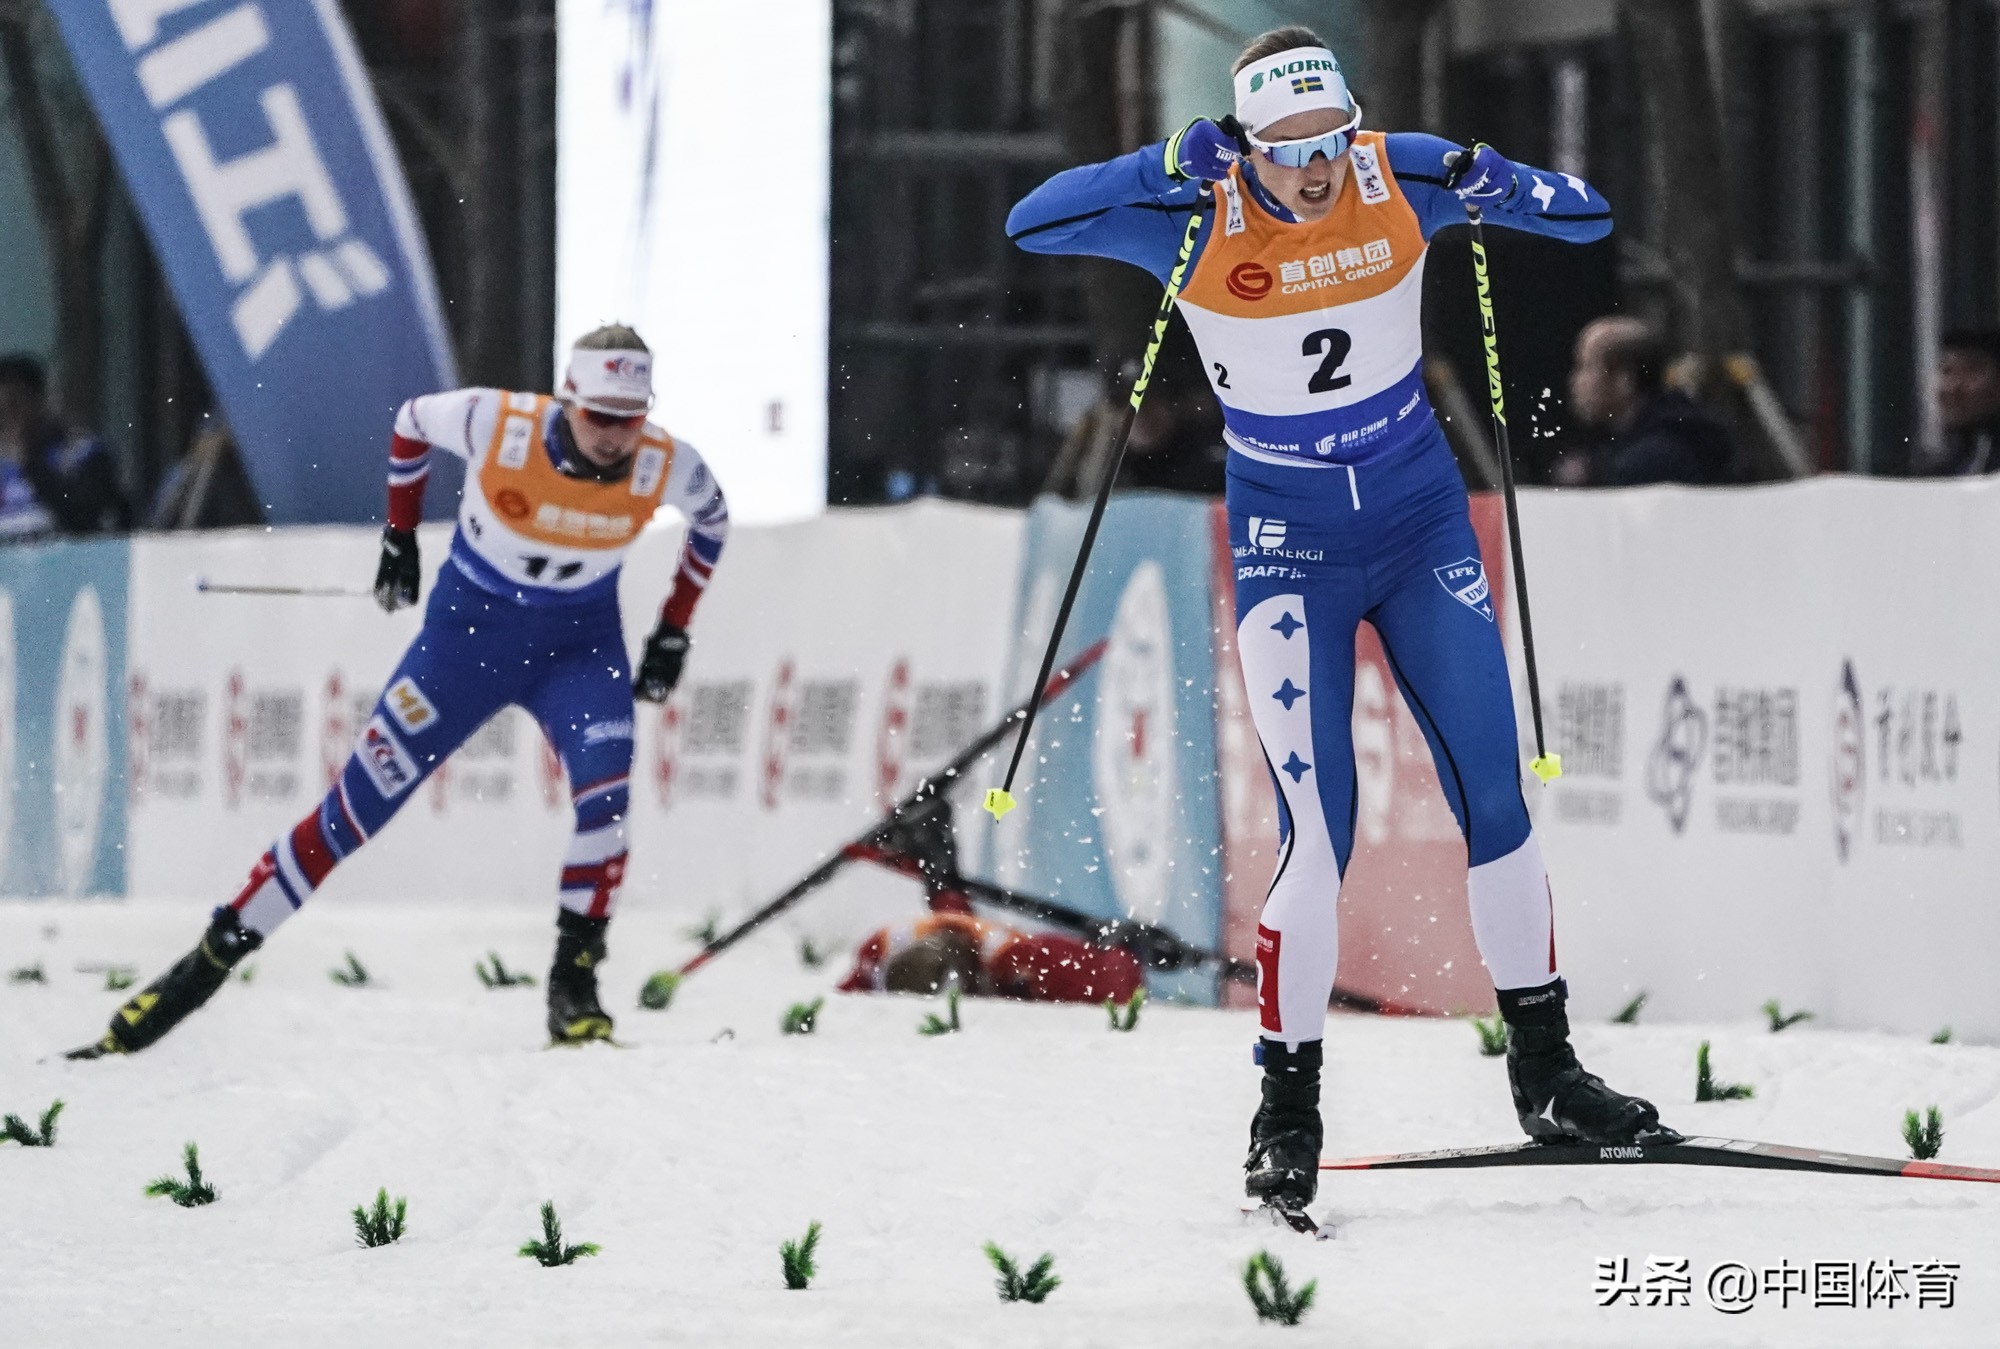 冬季残奥会越野滑雪男子20公里中国选手出战_热点新闻_图片频道_齐鲁网